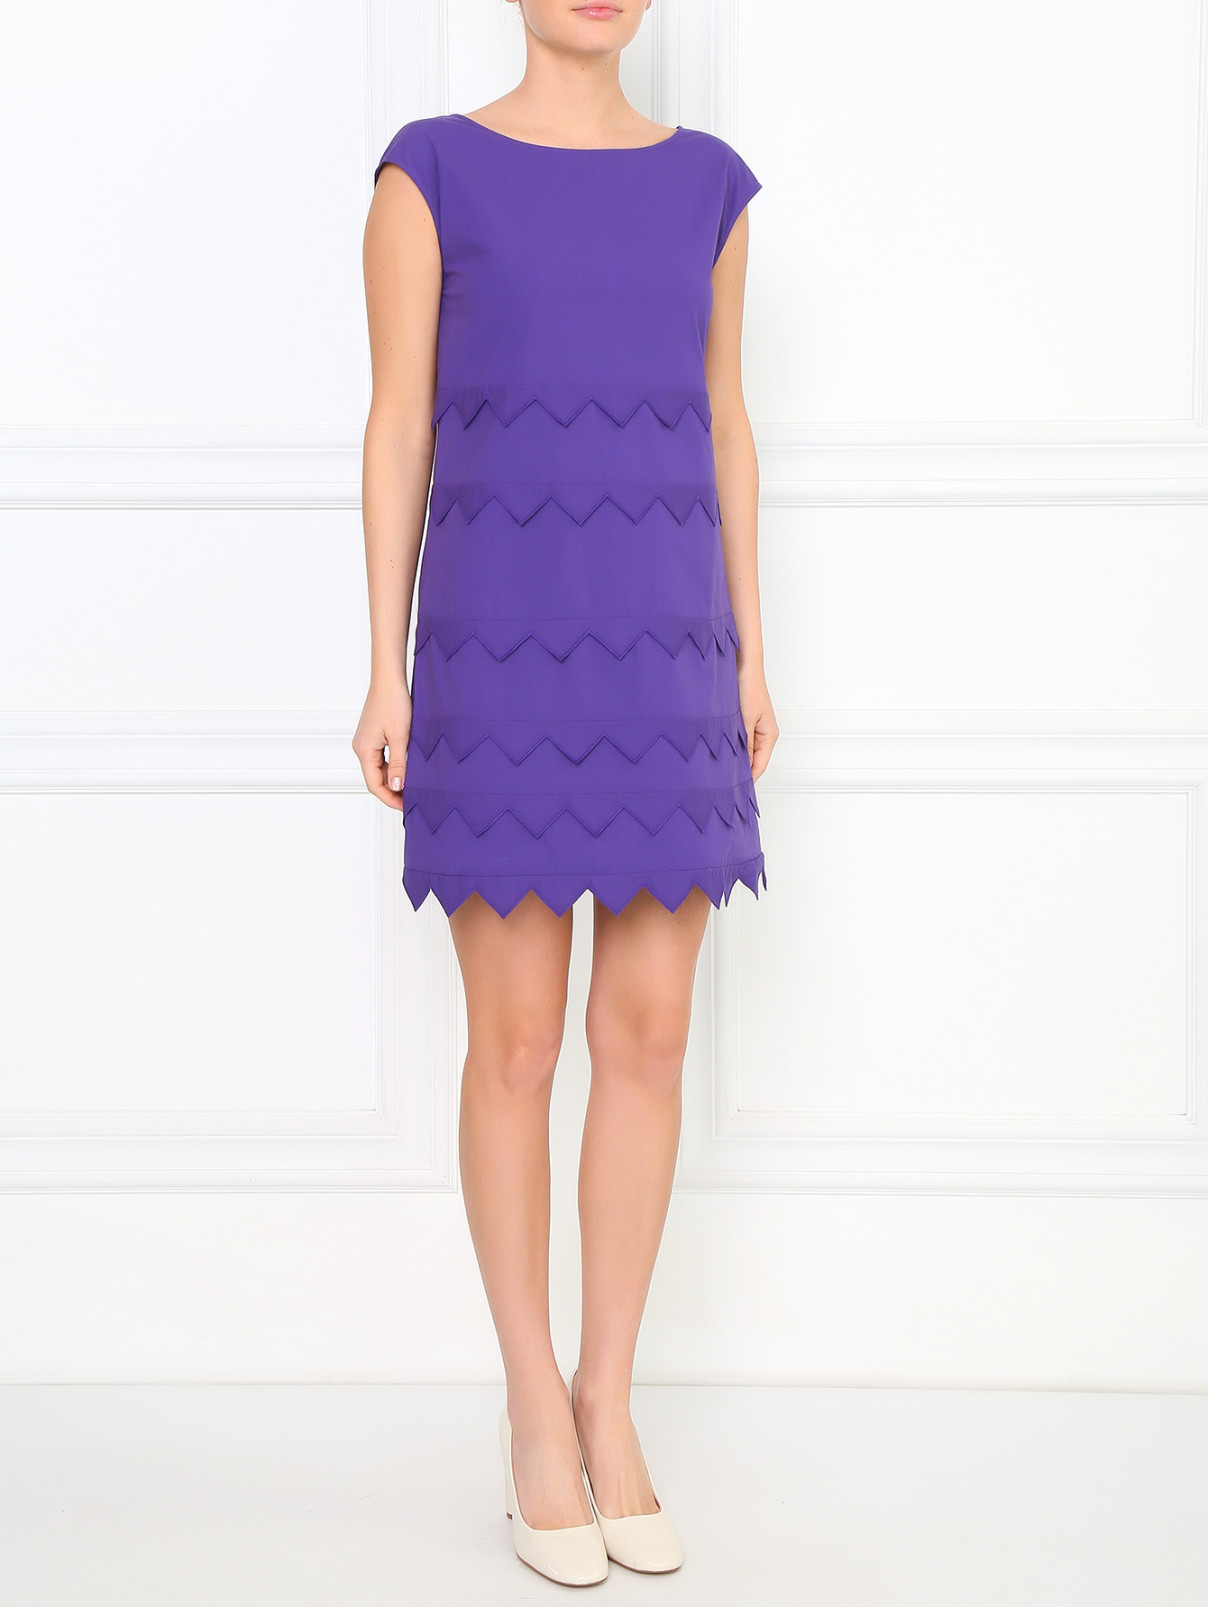 Платье прямого кроя из хлопка Moschino Cheap&Chic  –  Модель Общий вид  – Цвет:  Фиолетовый